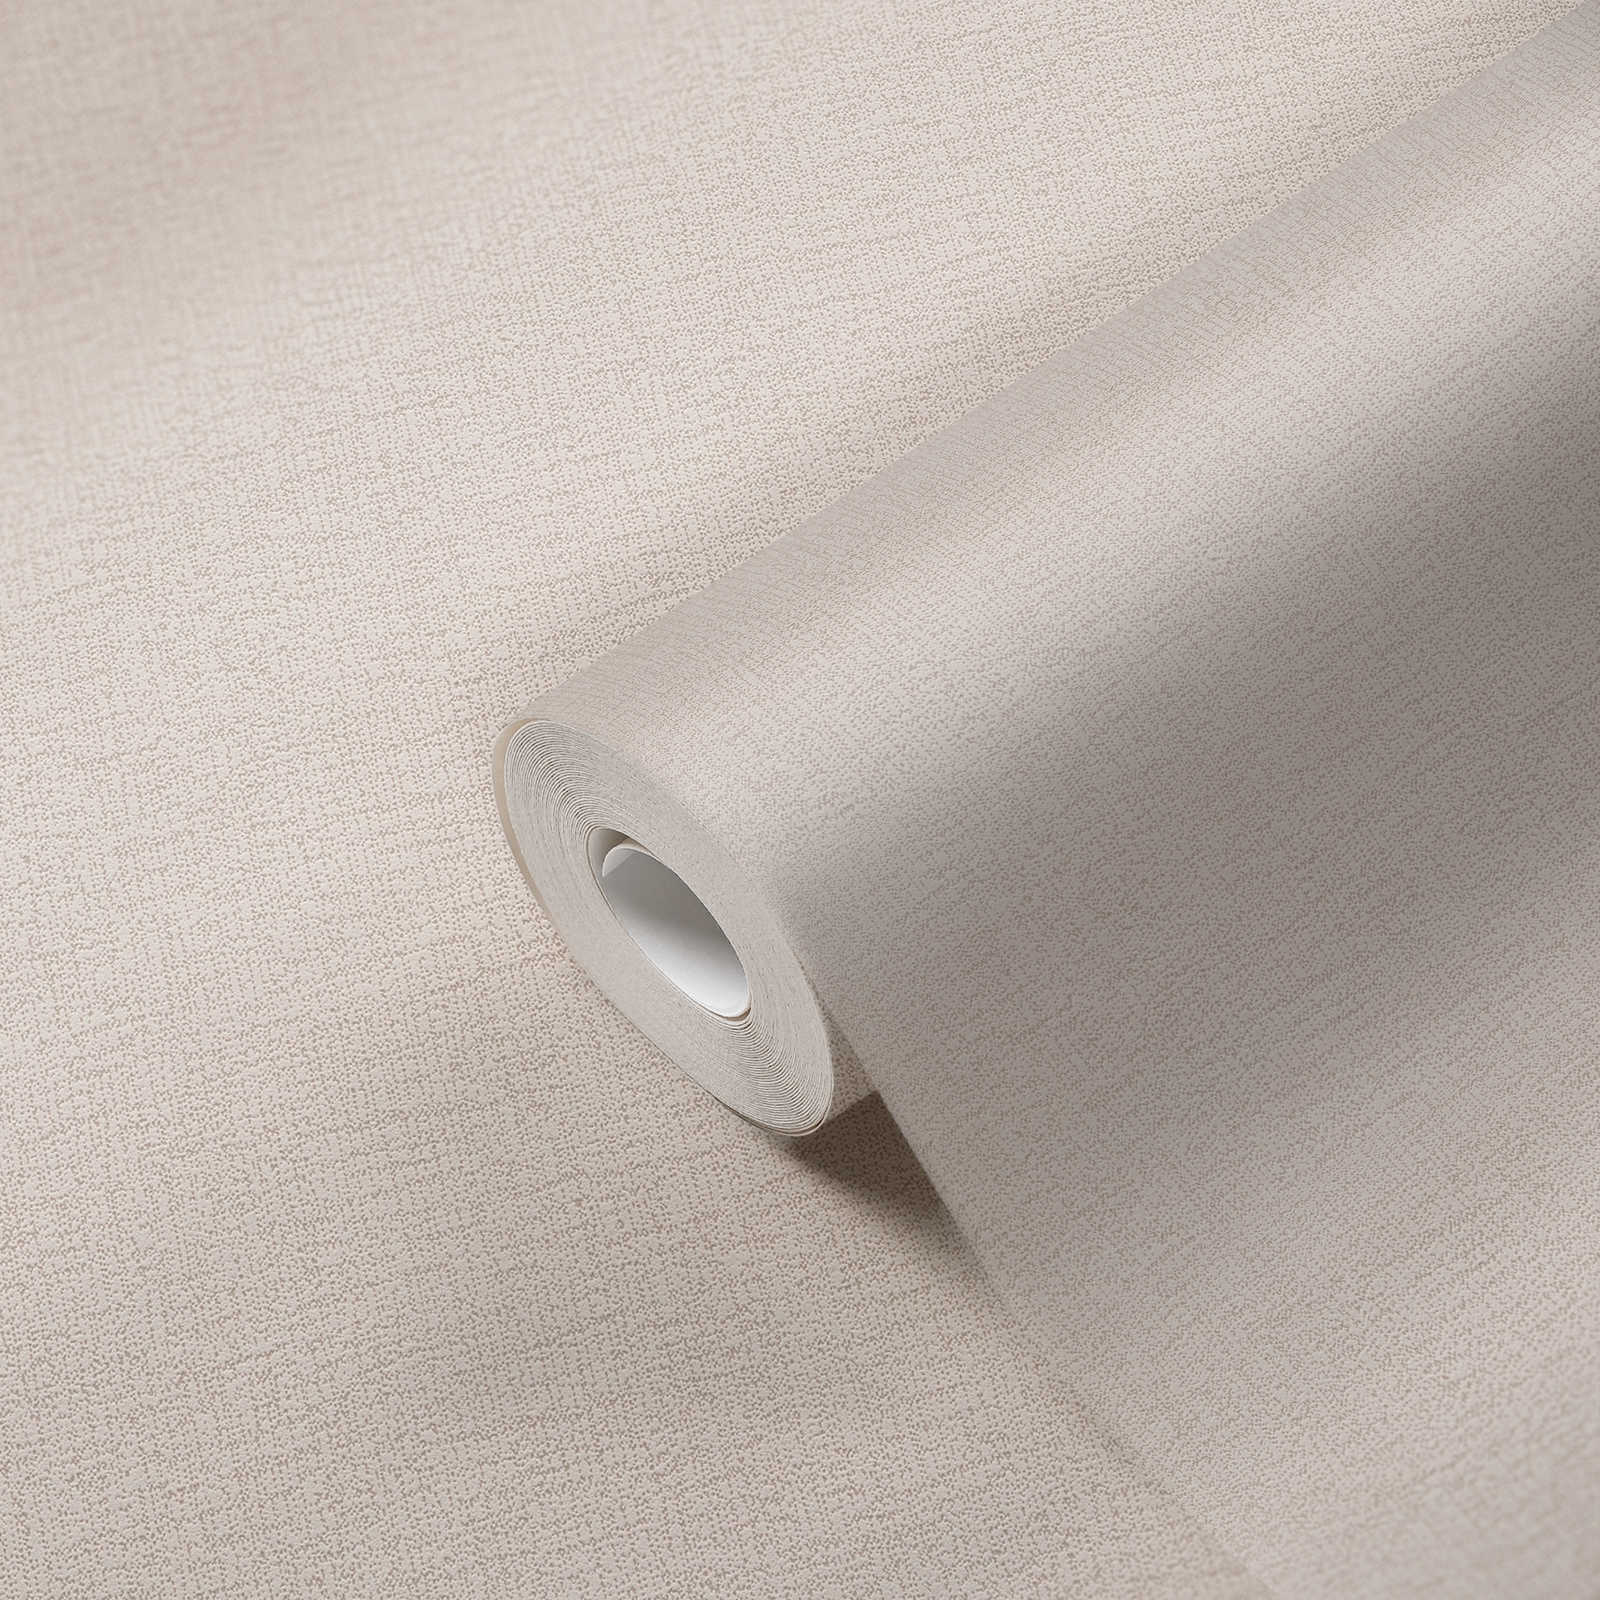             Wallpaper light beige linen look with textured pattern - beige
        